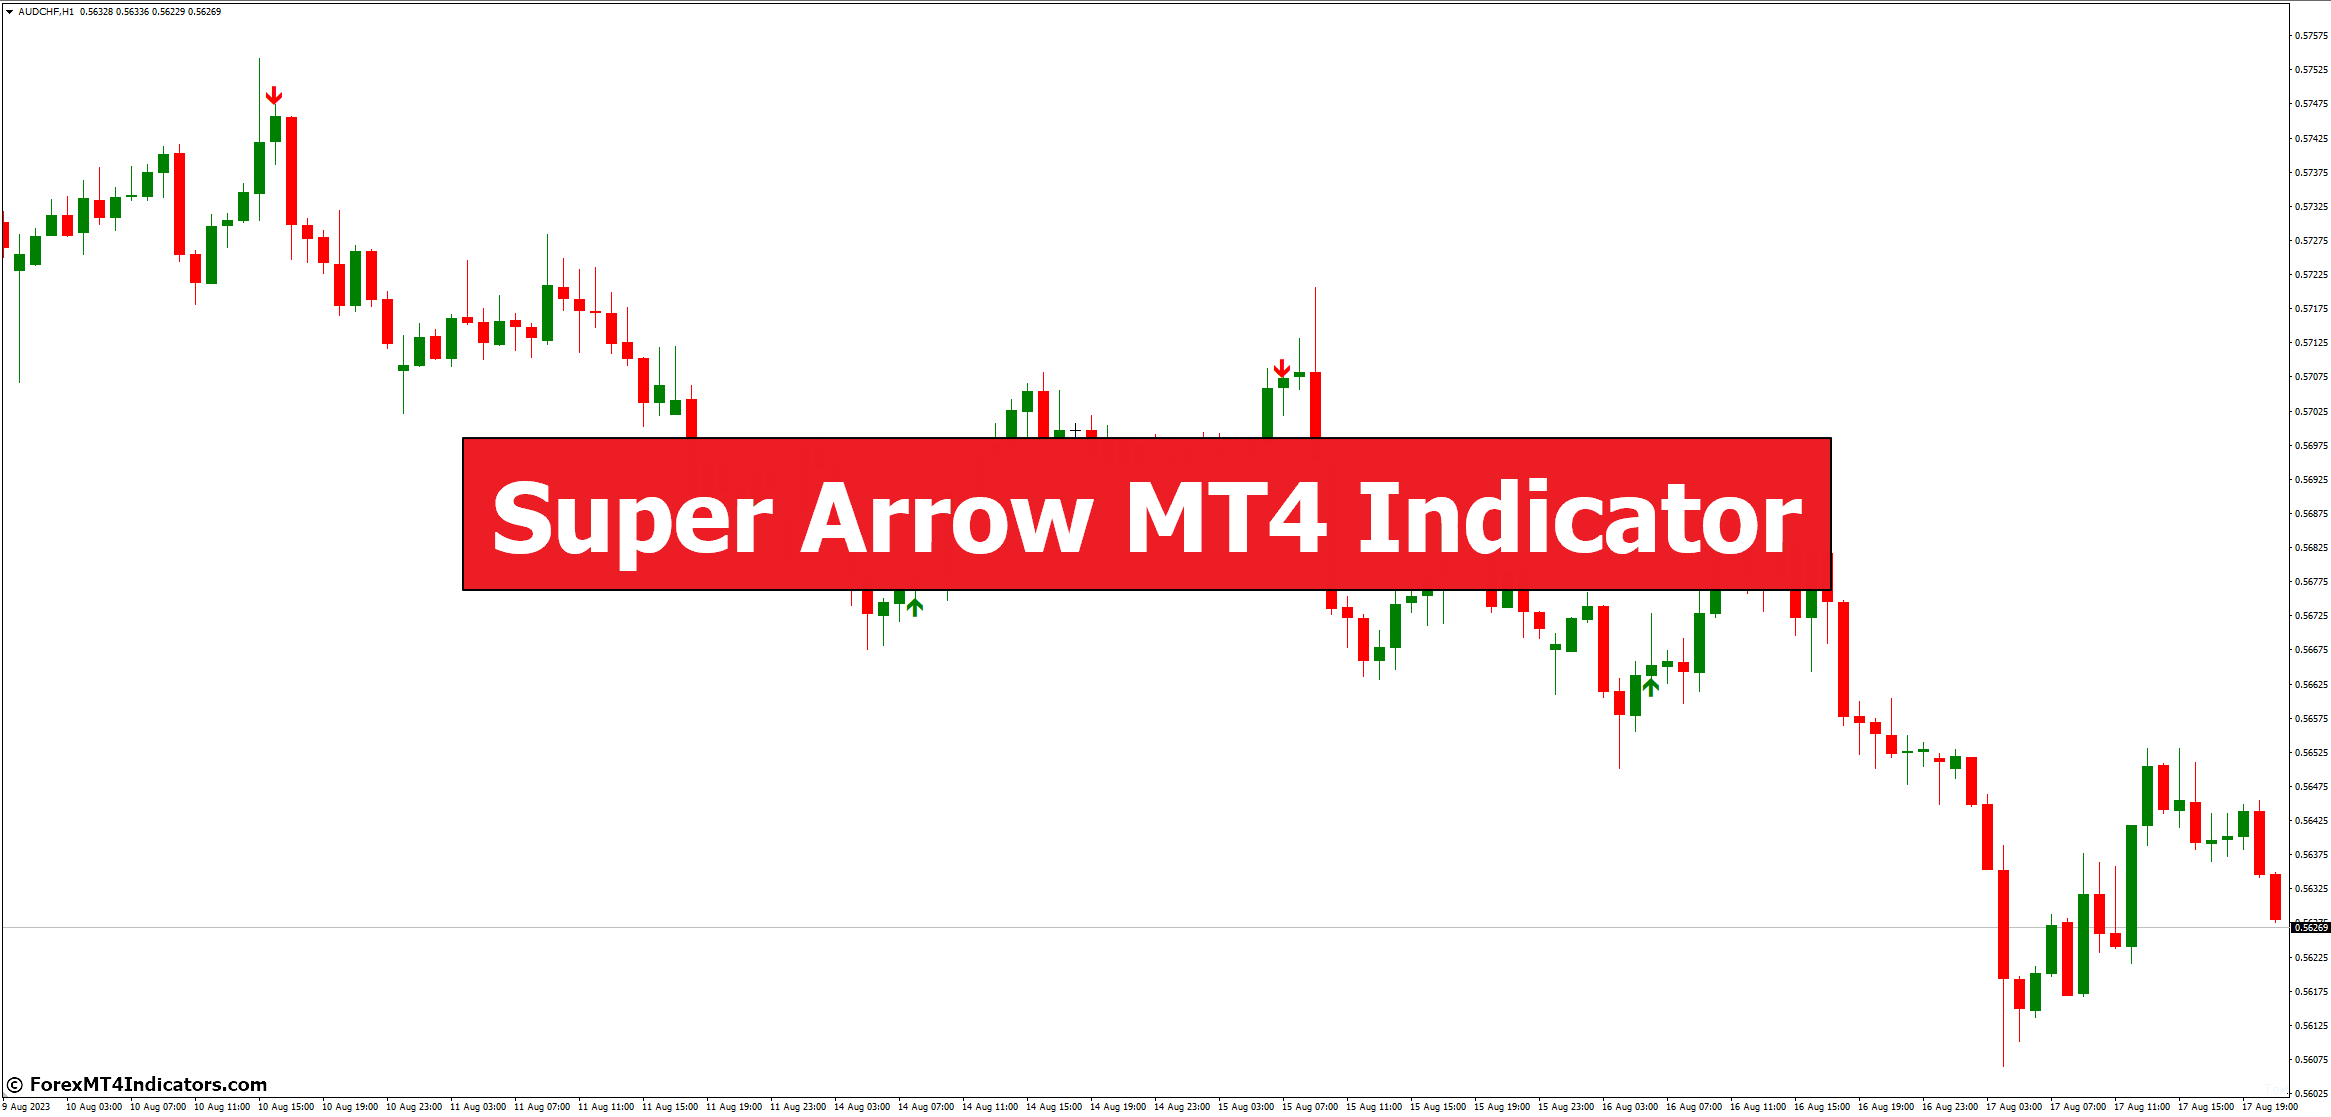 Super Arrow MT4 Indicator